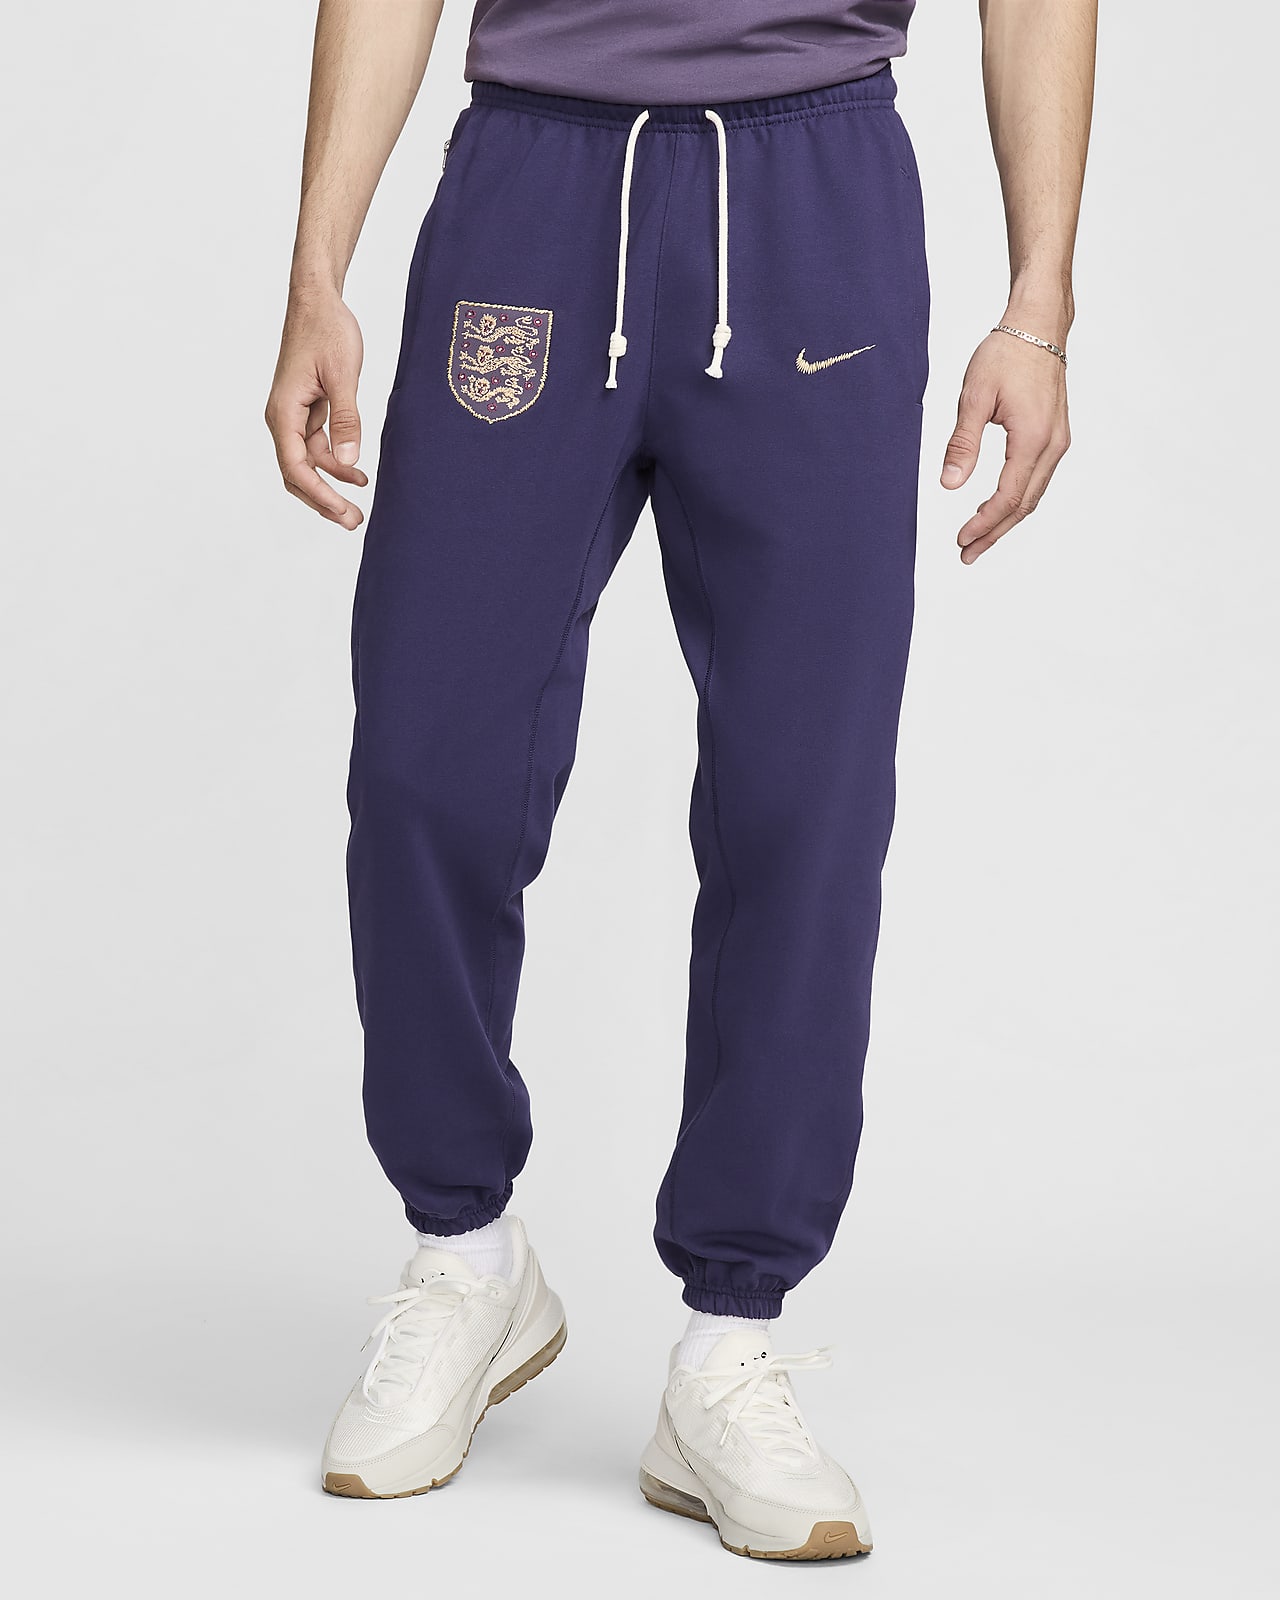 Anglia Standard Issue Nike Soccer férfinadrág